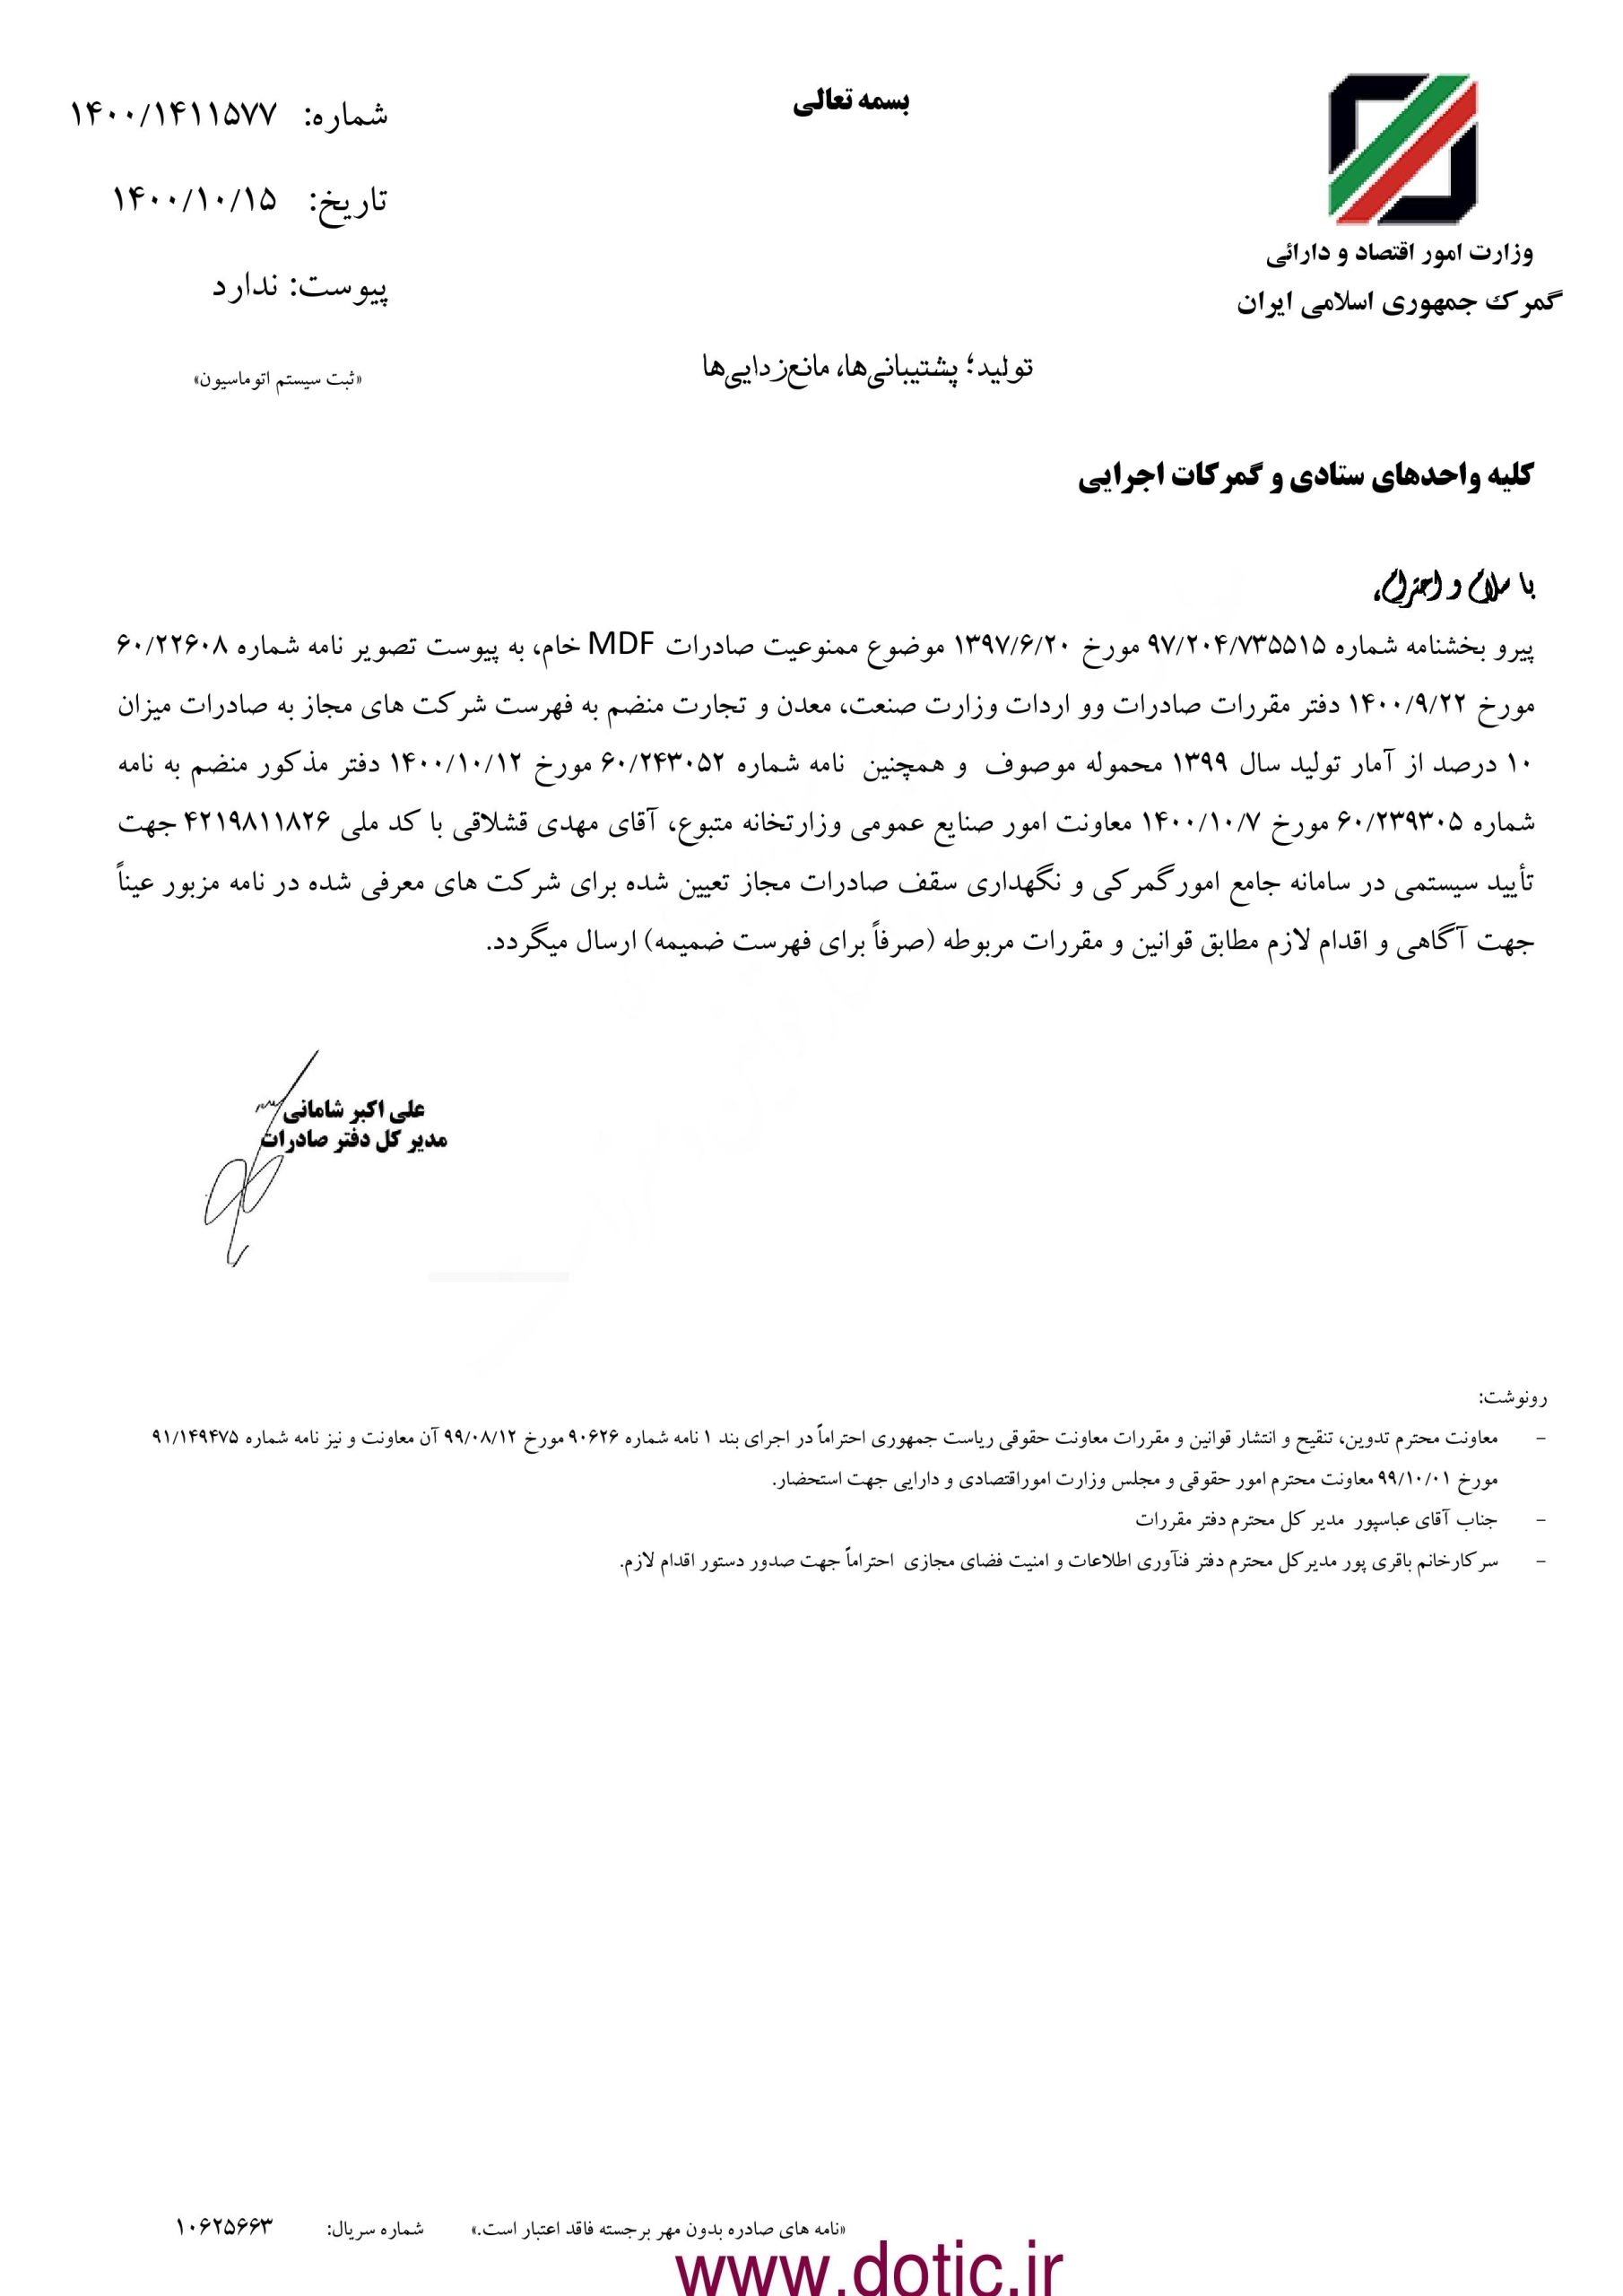 بخشنامه فهرست تولیدکنندگان مجاز صادرات MDF خام ۱۴۰۰/۱۰/۱۵